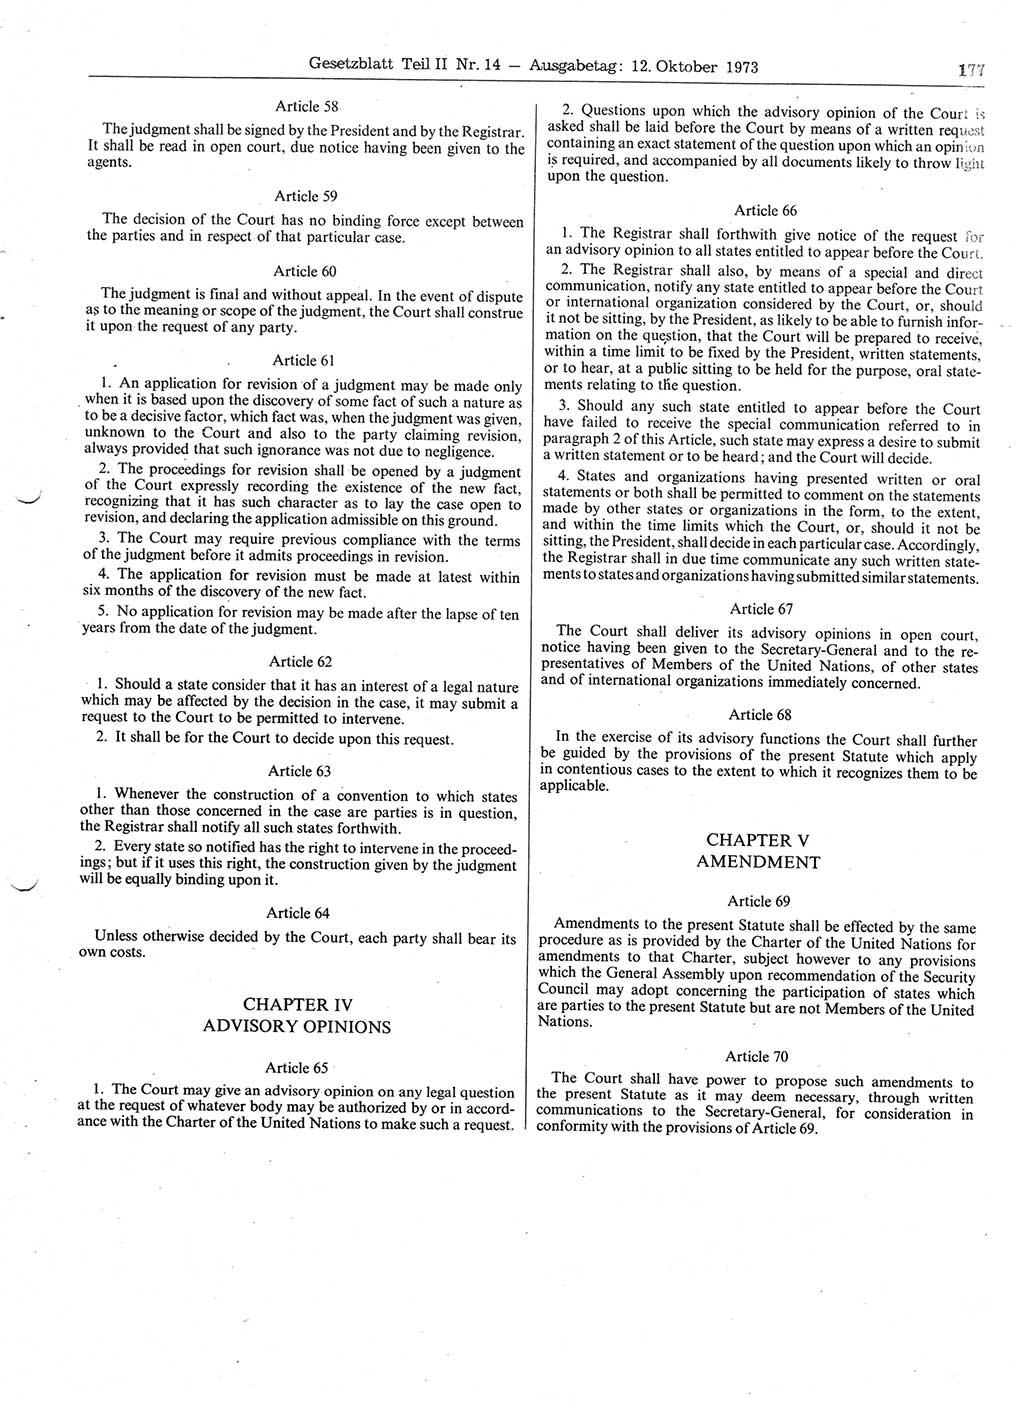 Gesetzblatt (GBl.) der Deutschen Demokratischen Republik (DDR) Teil ⅠⅠ 1973, Seite 177 (GBl. DDR ⅠⅠ 1973, S. 177)